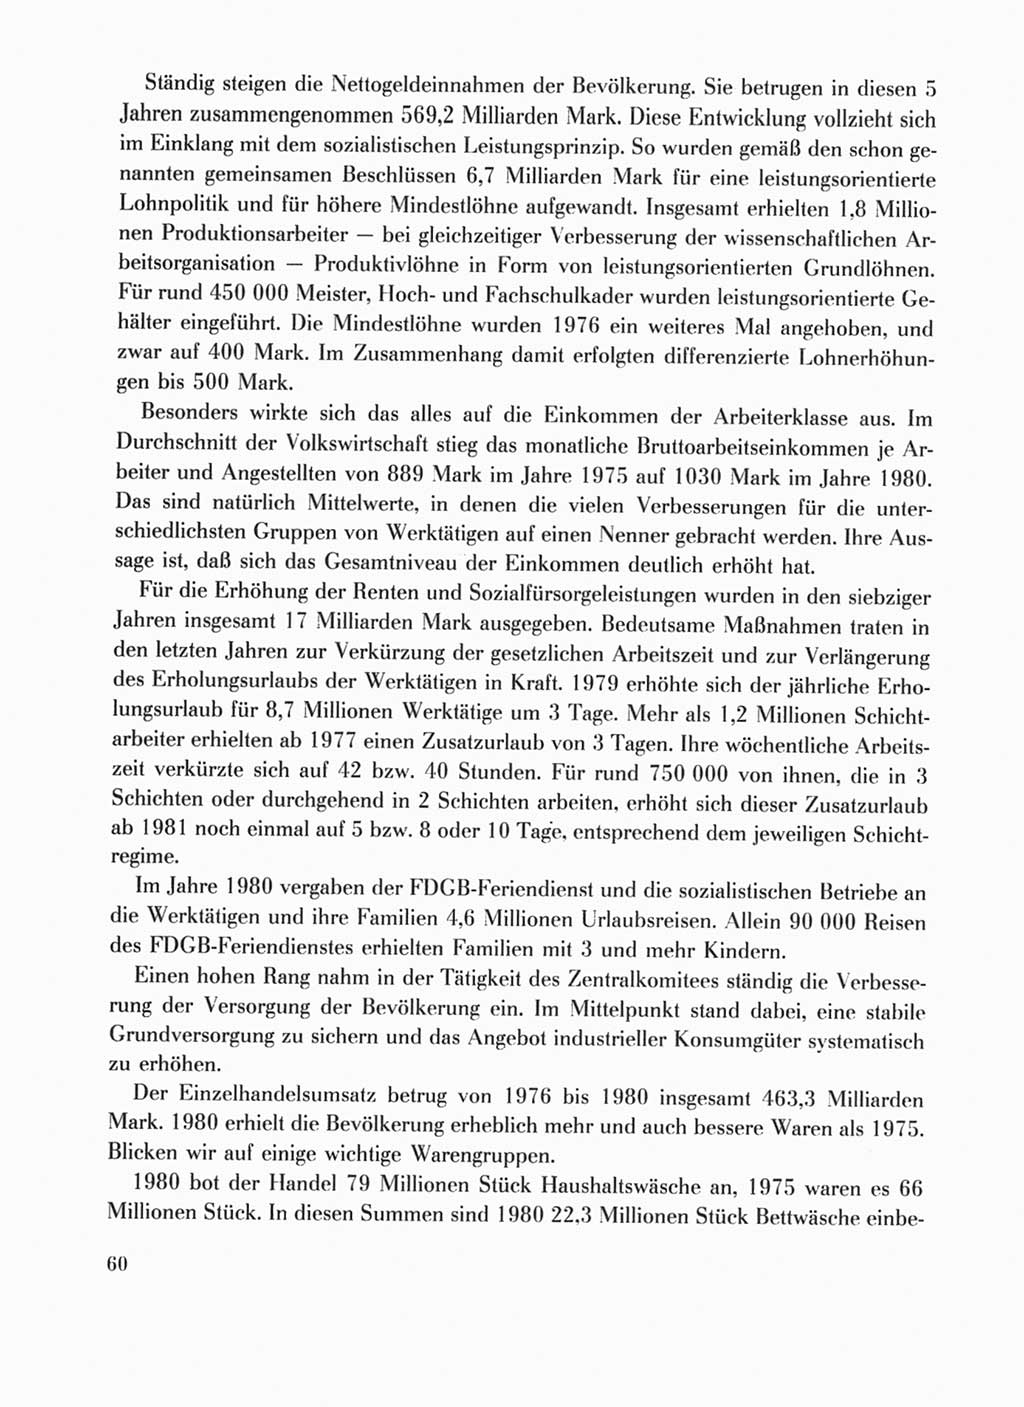 Protokoll der Verhandlungen des Ⅹ. Parteitages der Sozialistischen Einheitspartei Deutschlands (SED) [Deutsche Demokratische Republik (DDR)] 1981, Band 1, Seite 60 (Prot. Verh. Ⅹ. PT SED DDR 1981, Bd. 1, S. 60)